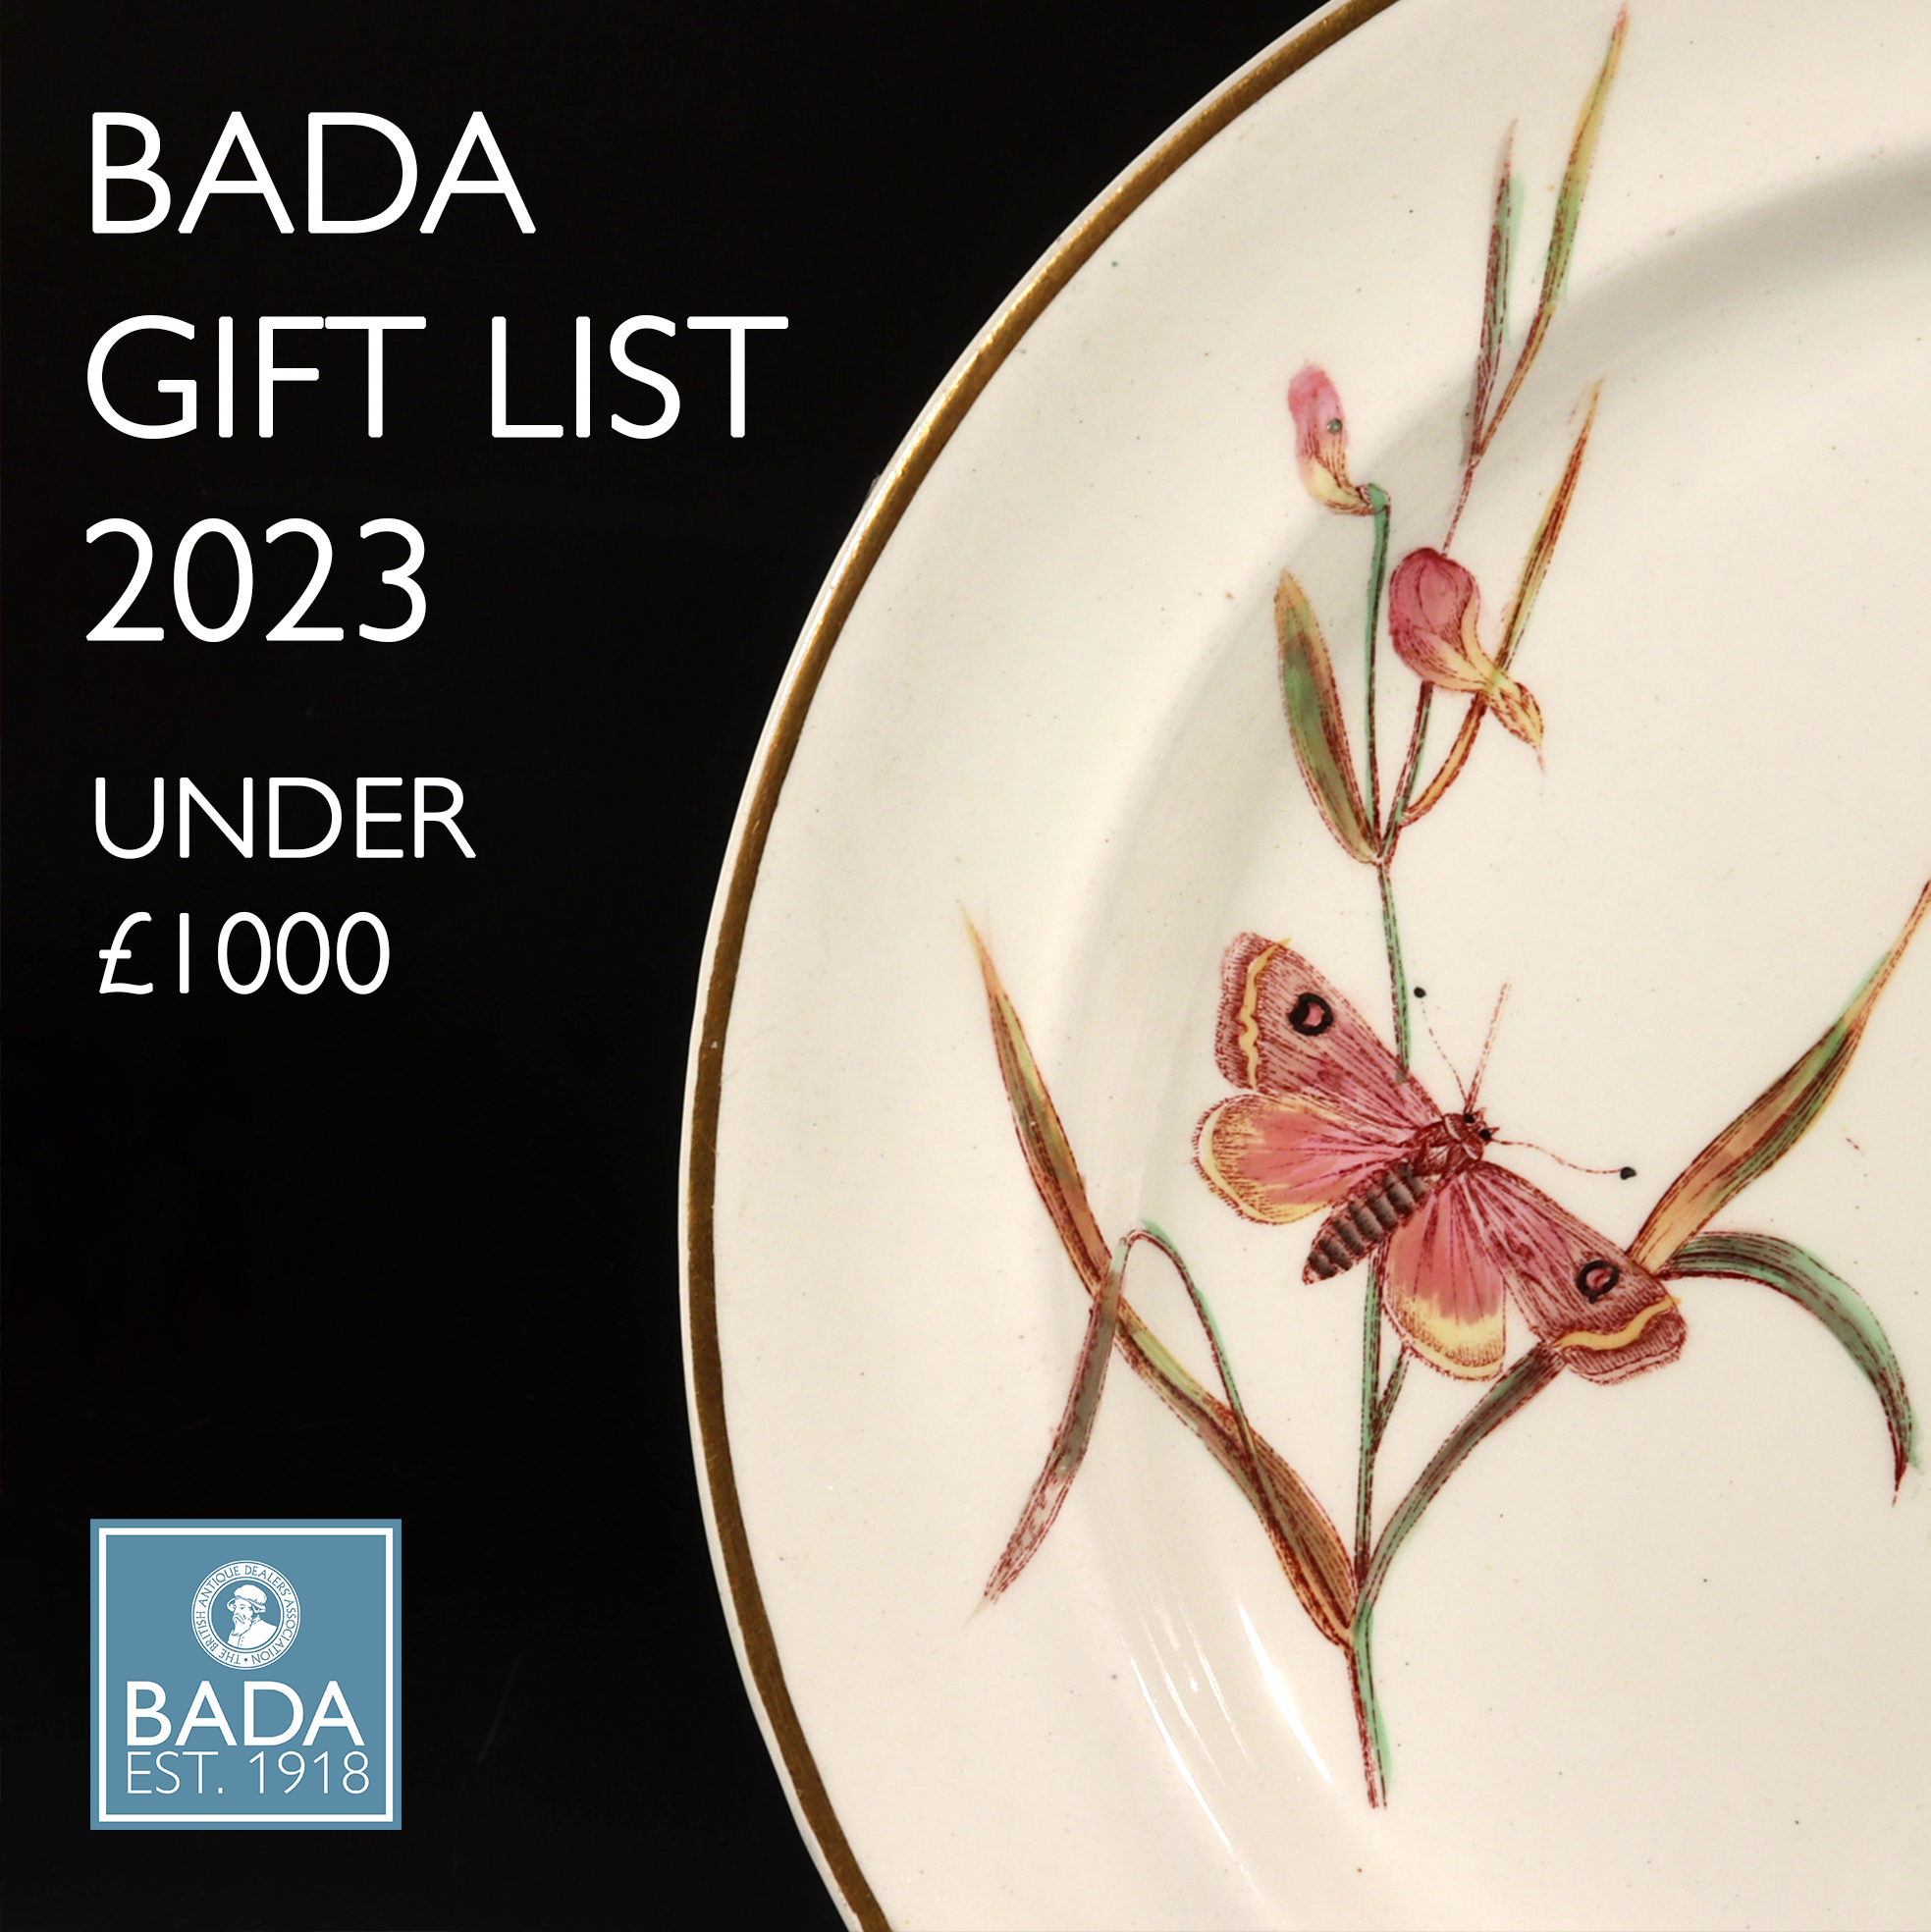 BADA GIFT LIST 2023 - UNDER £1000